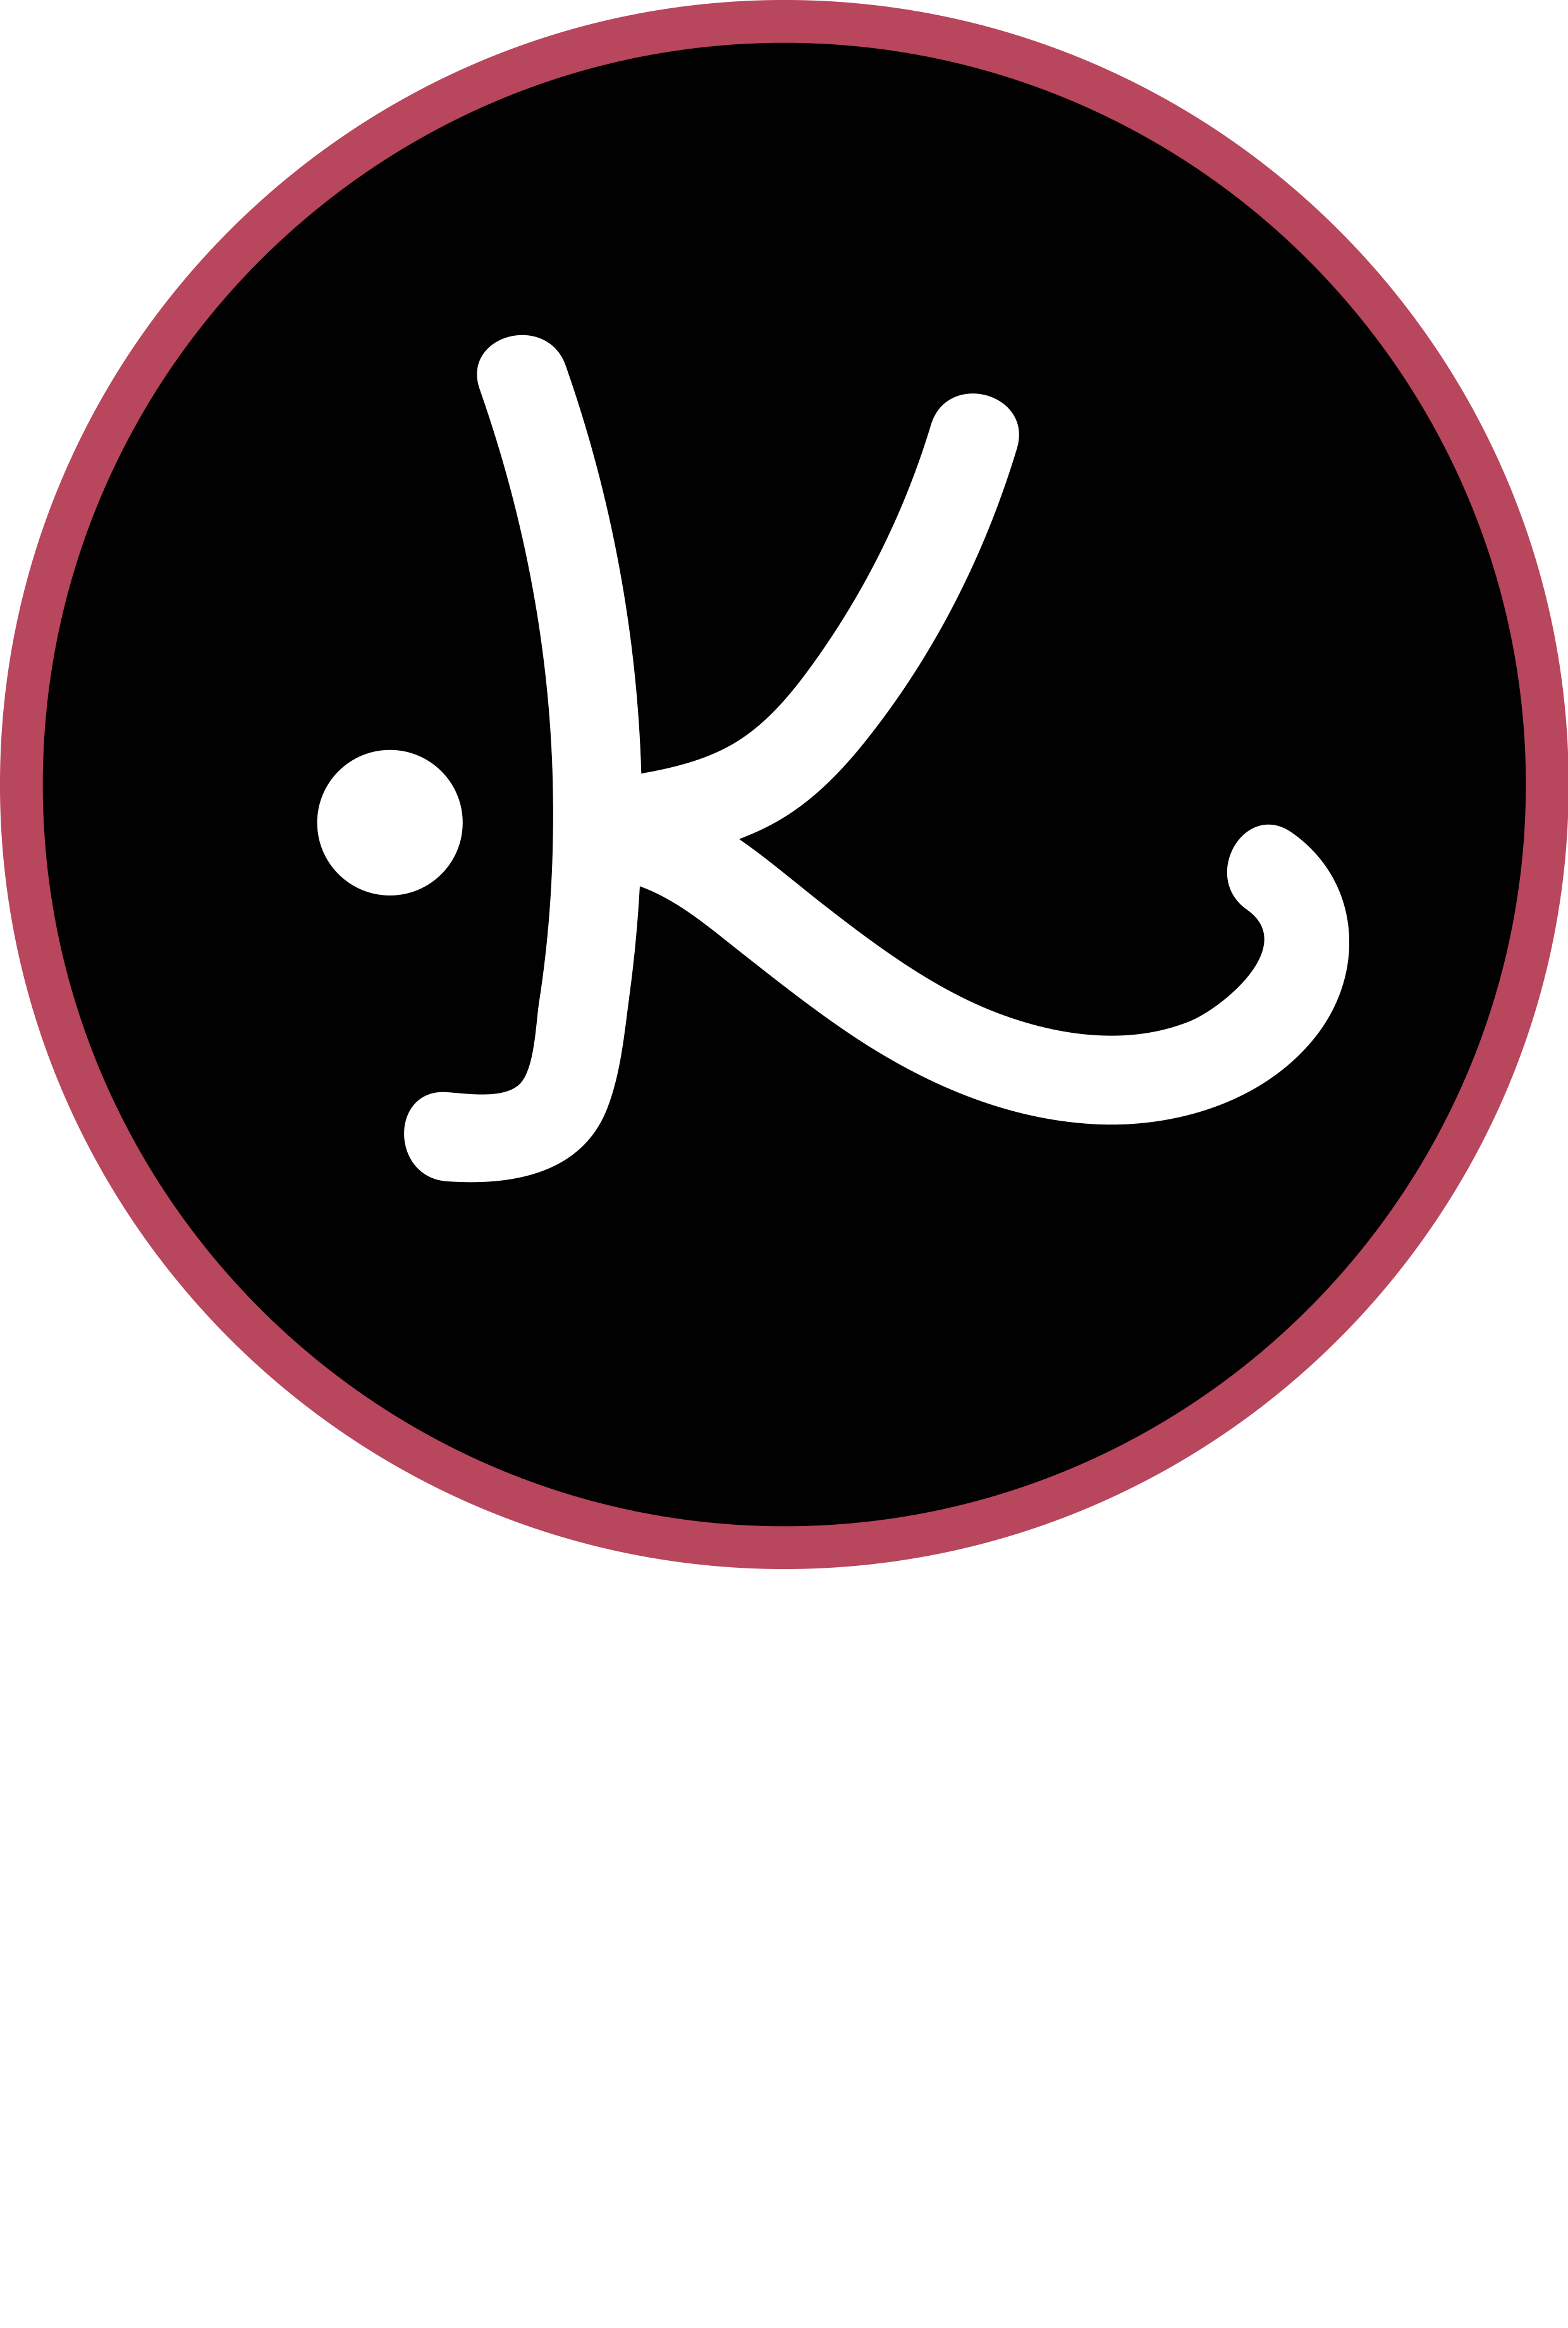 CLNK